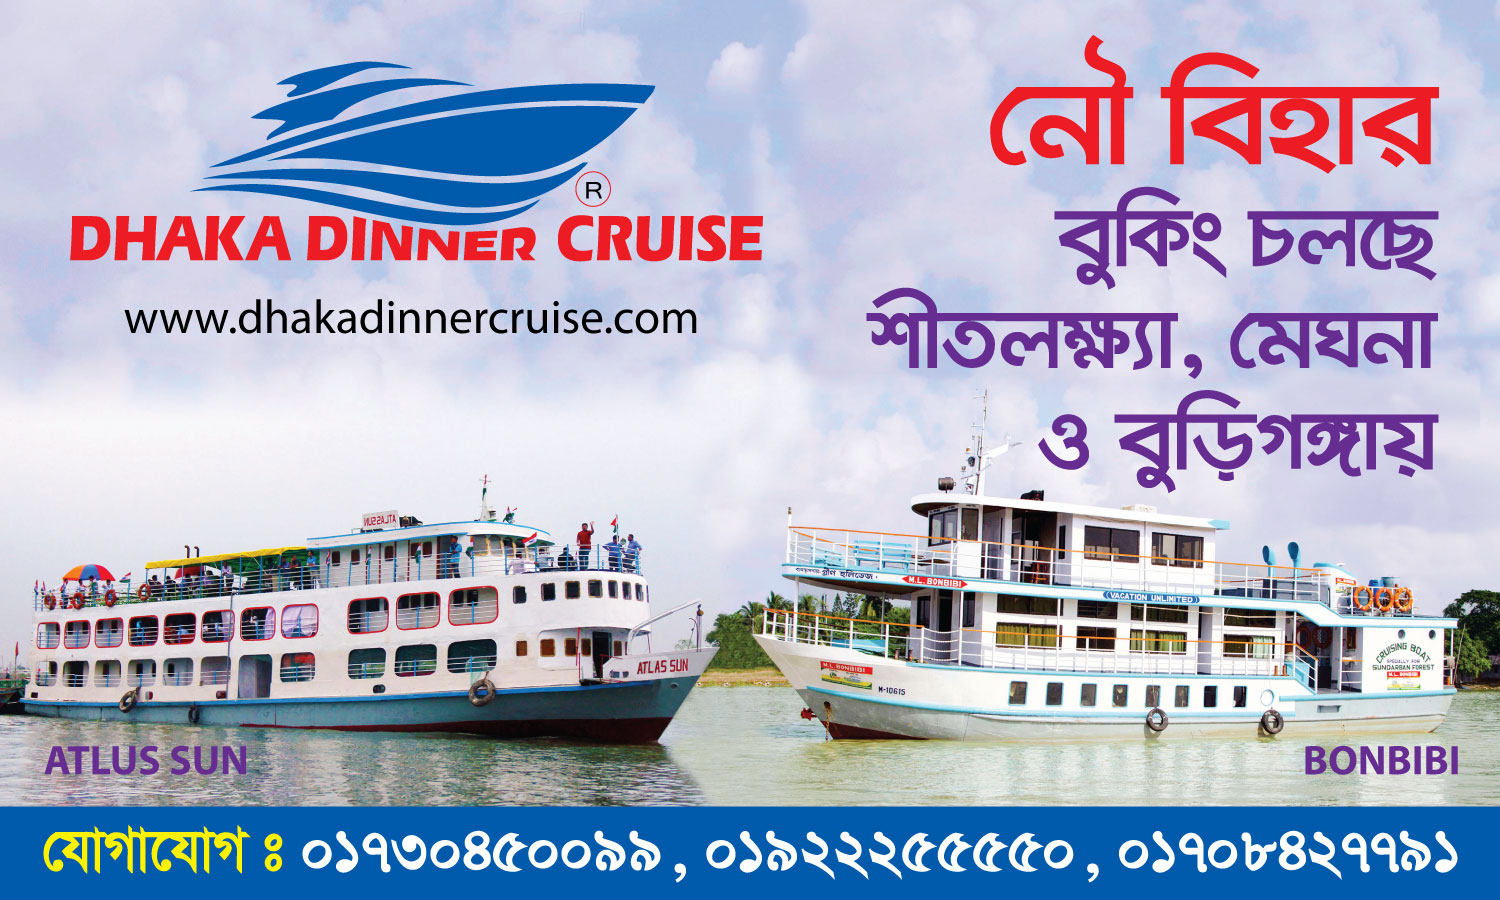 Dhaka Dinner Cruise New Banner